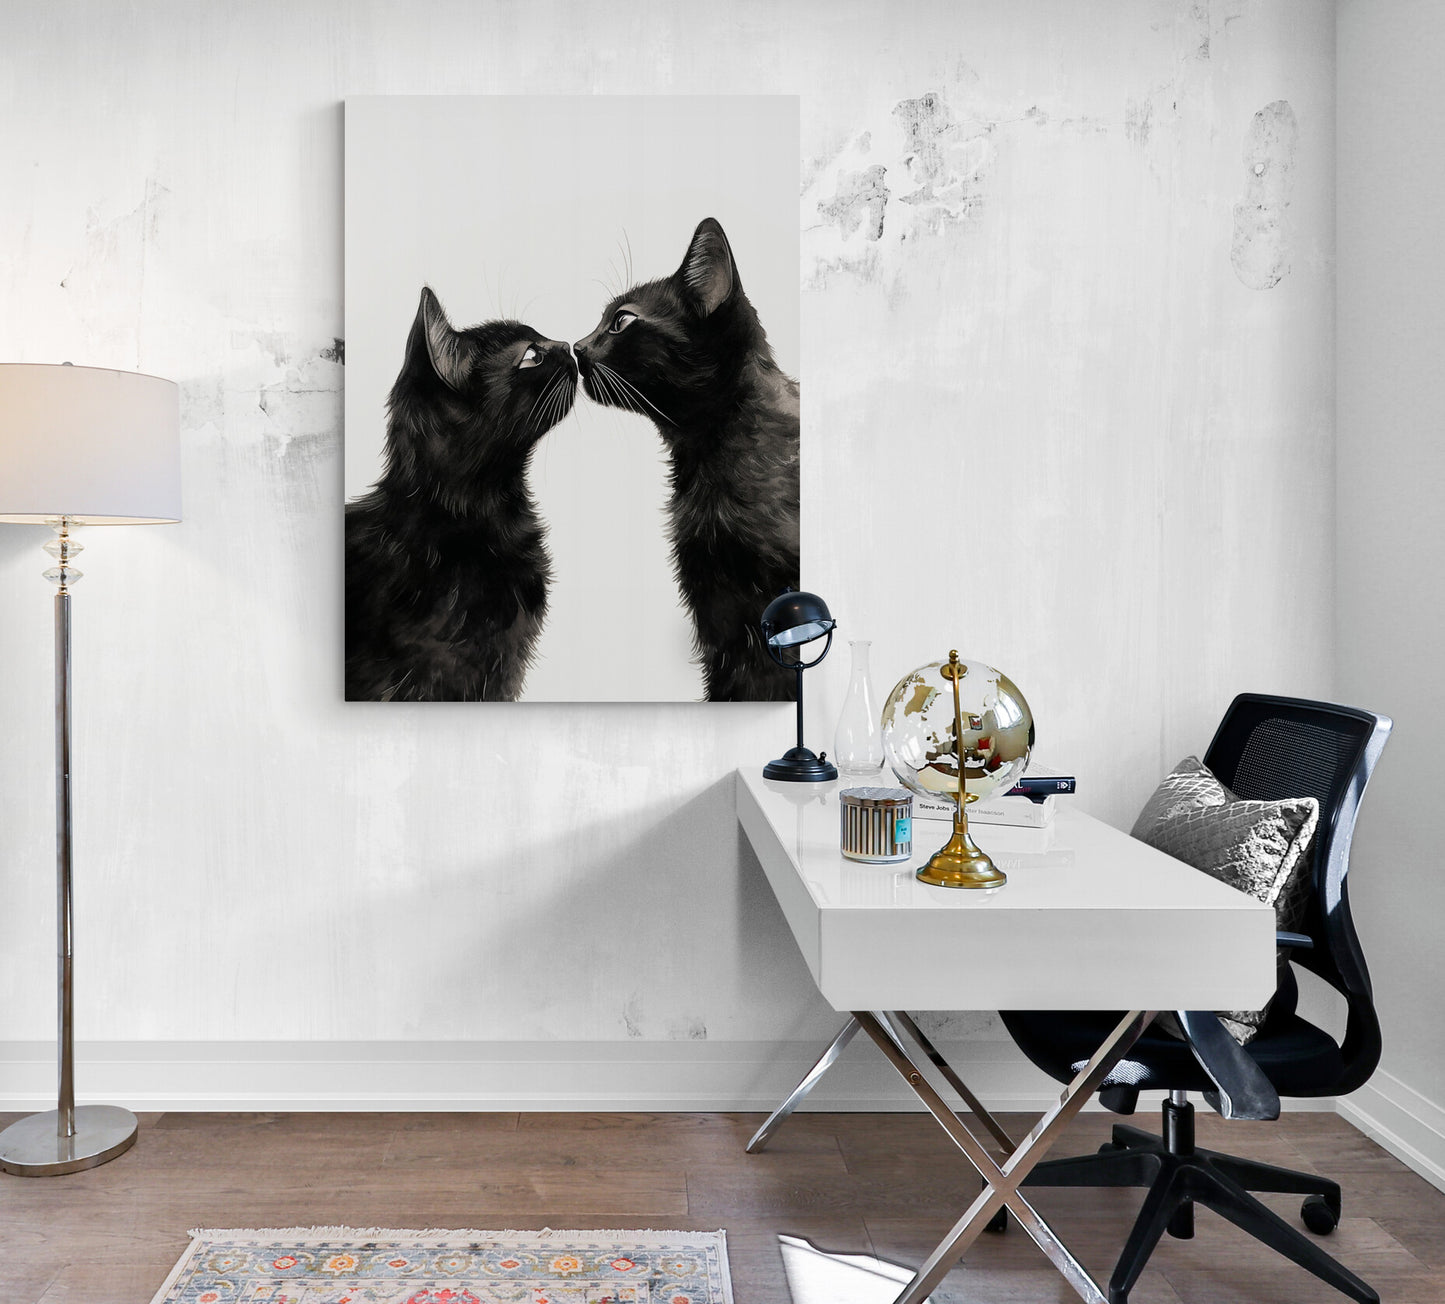 Une œuvre artistique représentant deux chats noirs se fait remarquer dans un bureau blanc, aux côtés d'un globe et d'une lampe design.